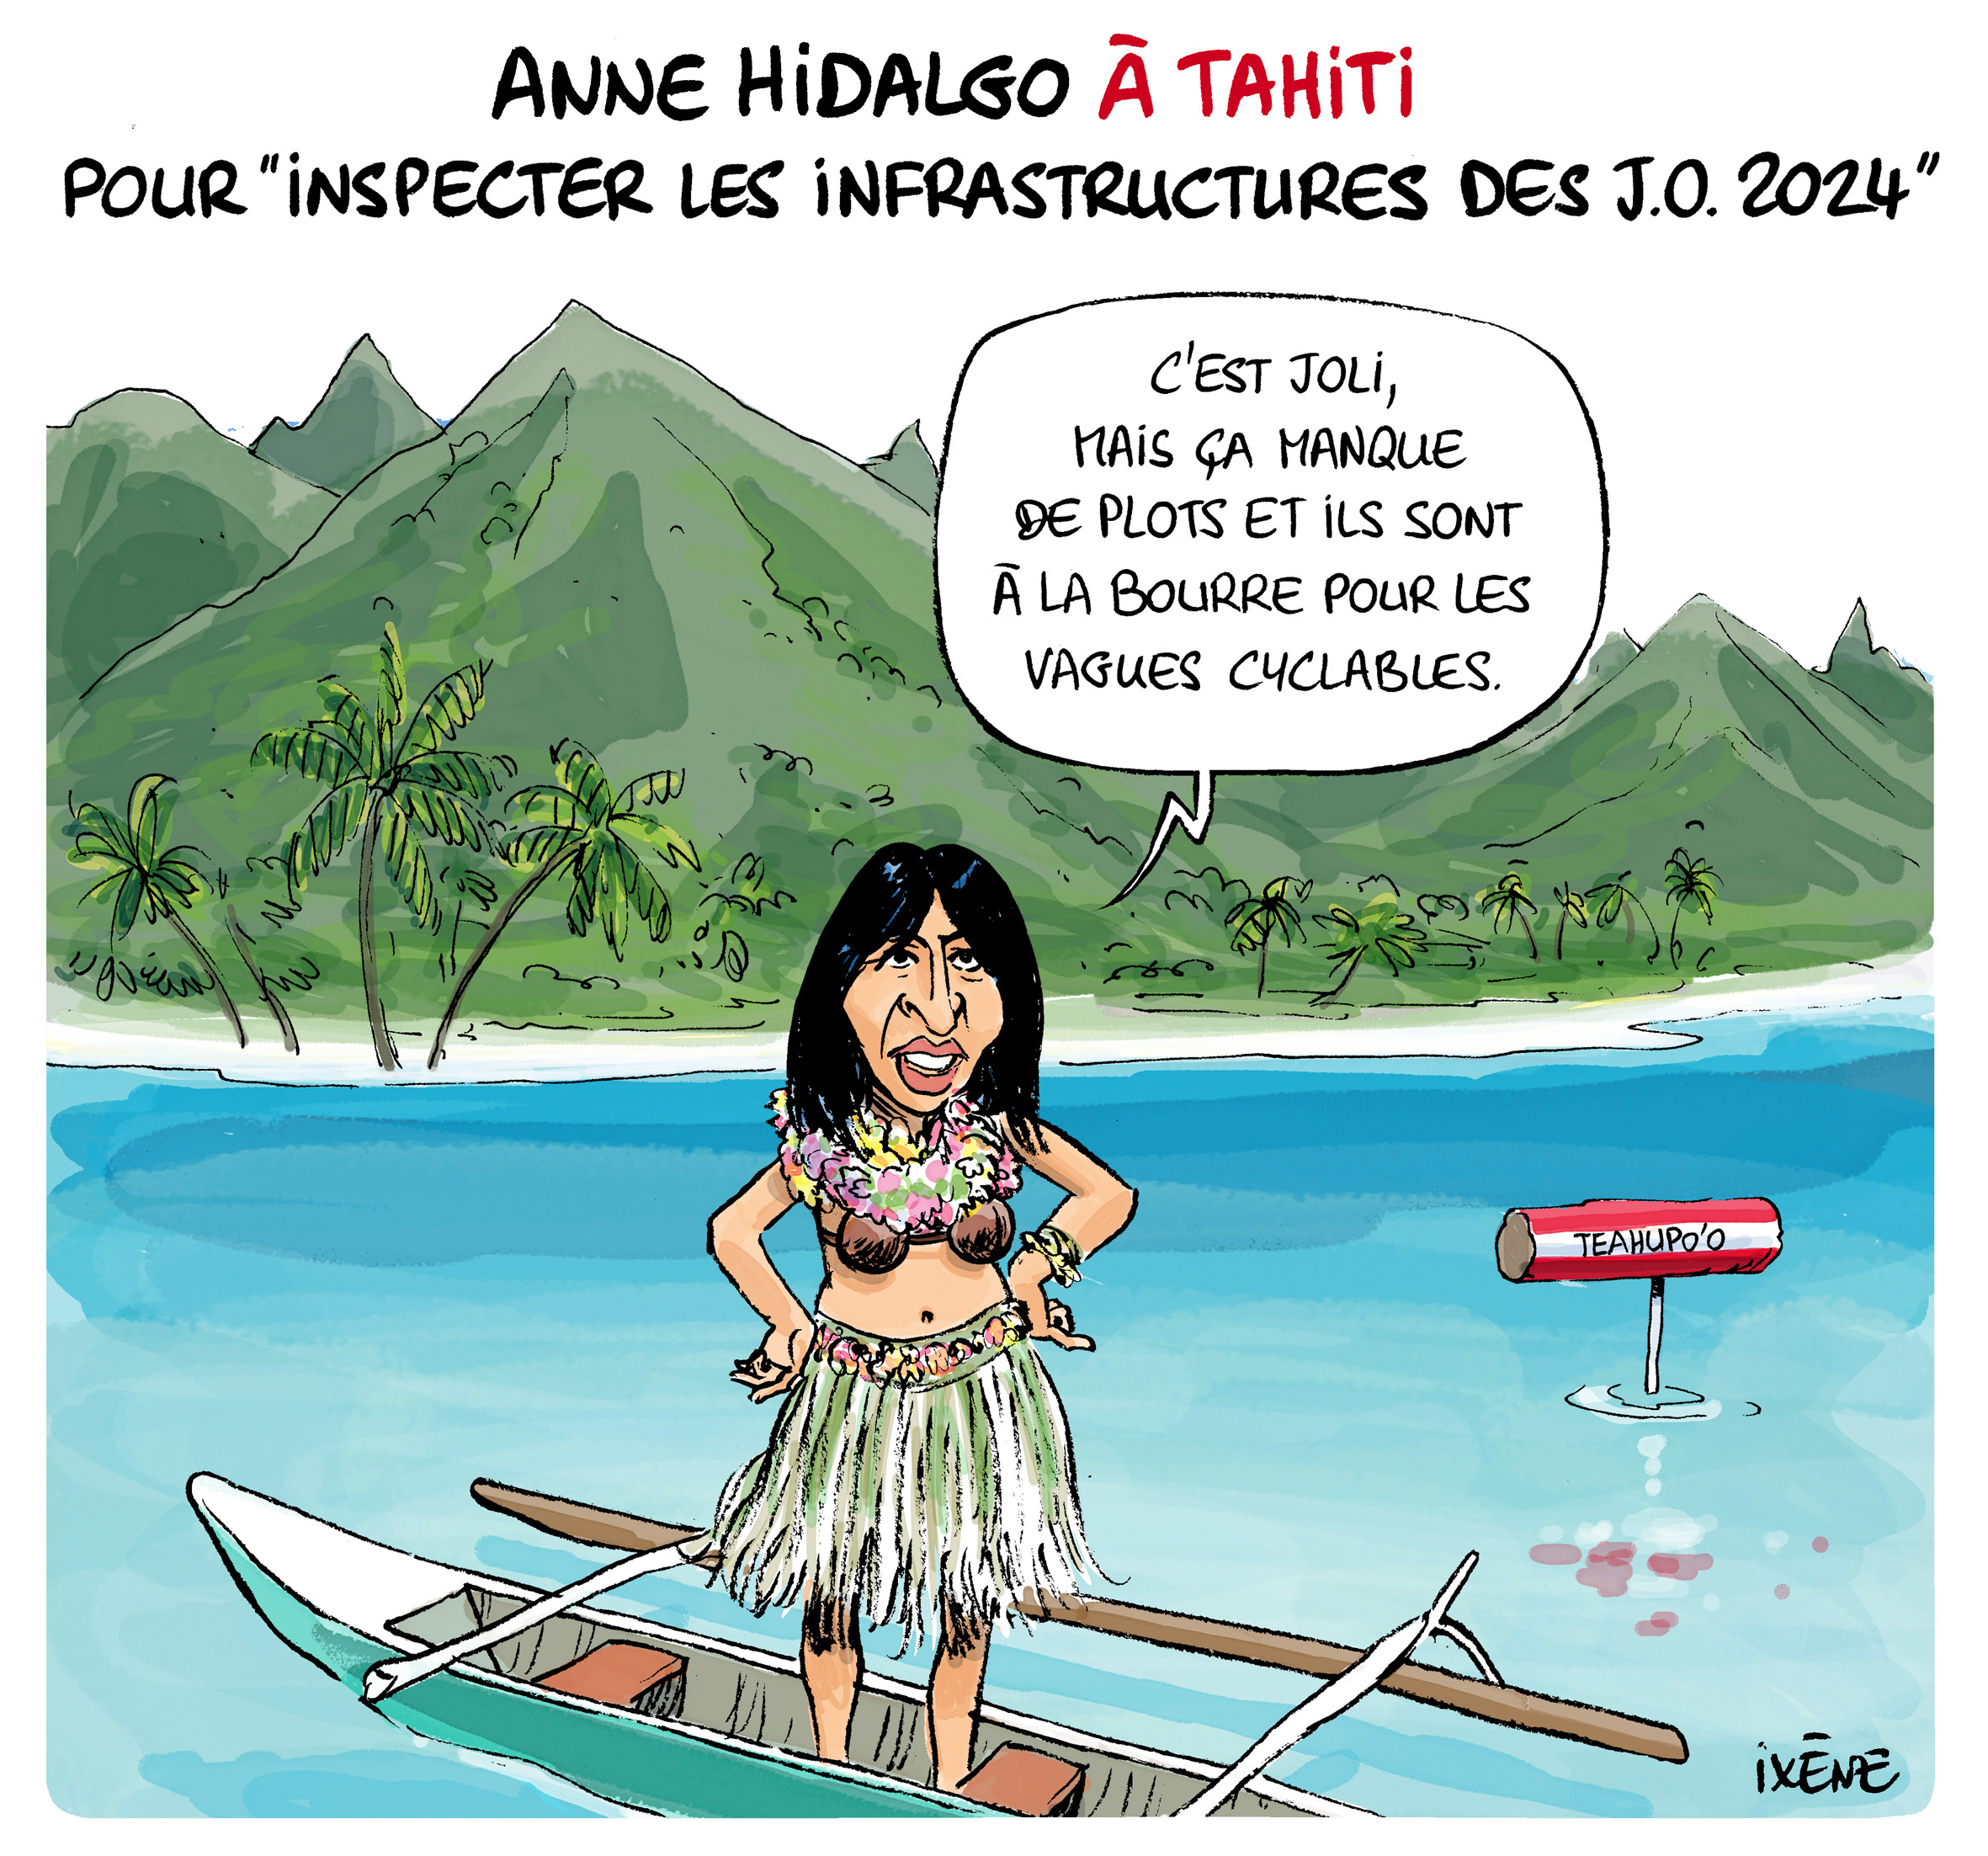 Le croc d'Ixène] Anne Hidalgo à Tahiti... - Boulevard Voltaire